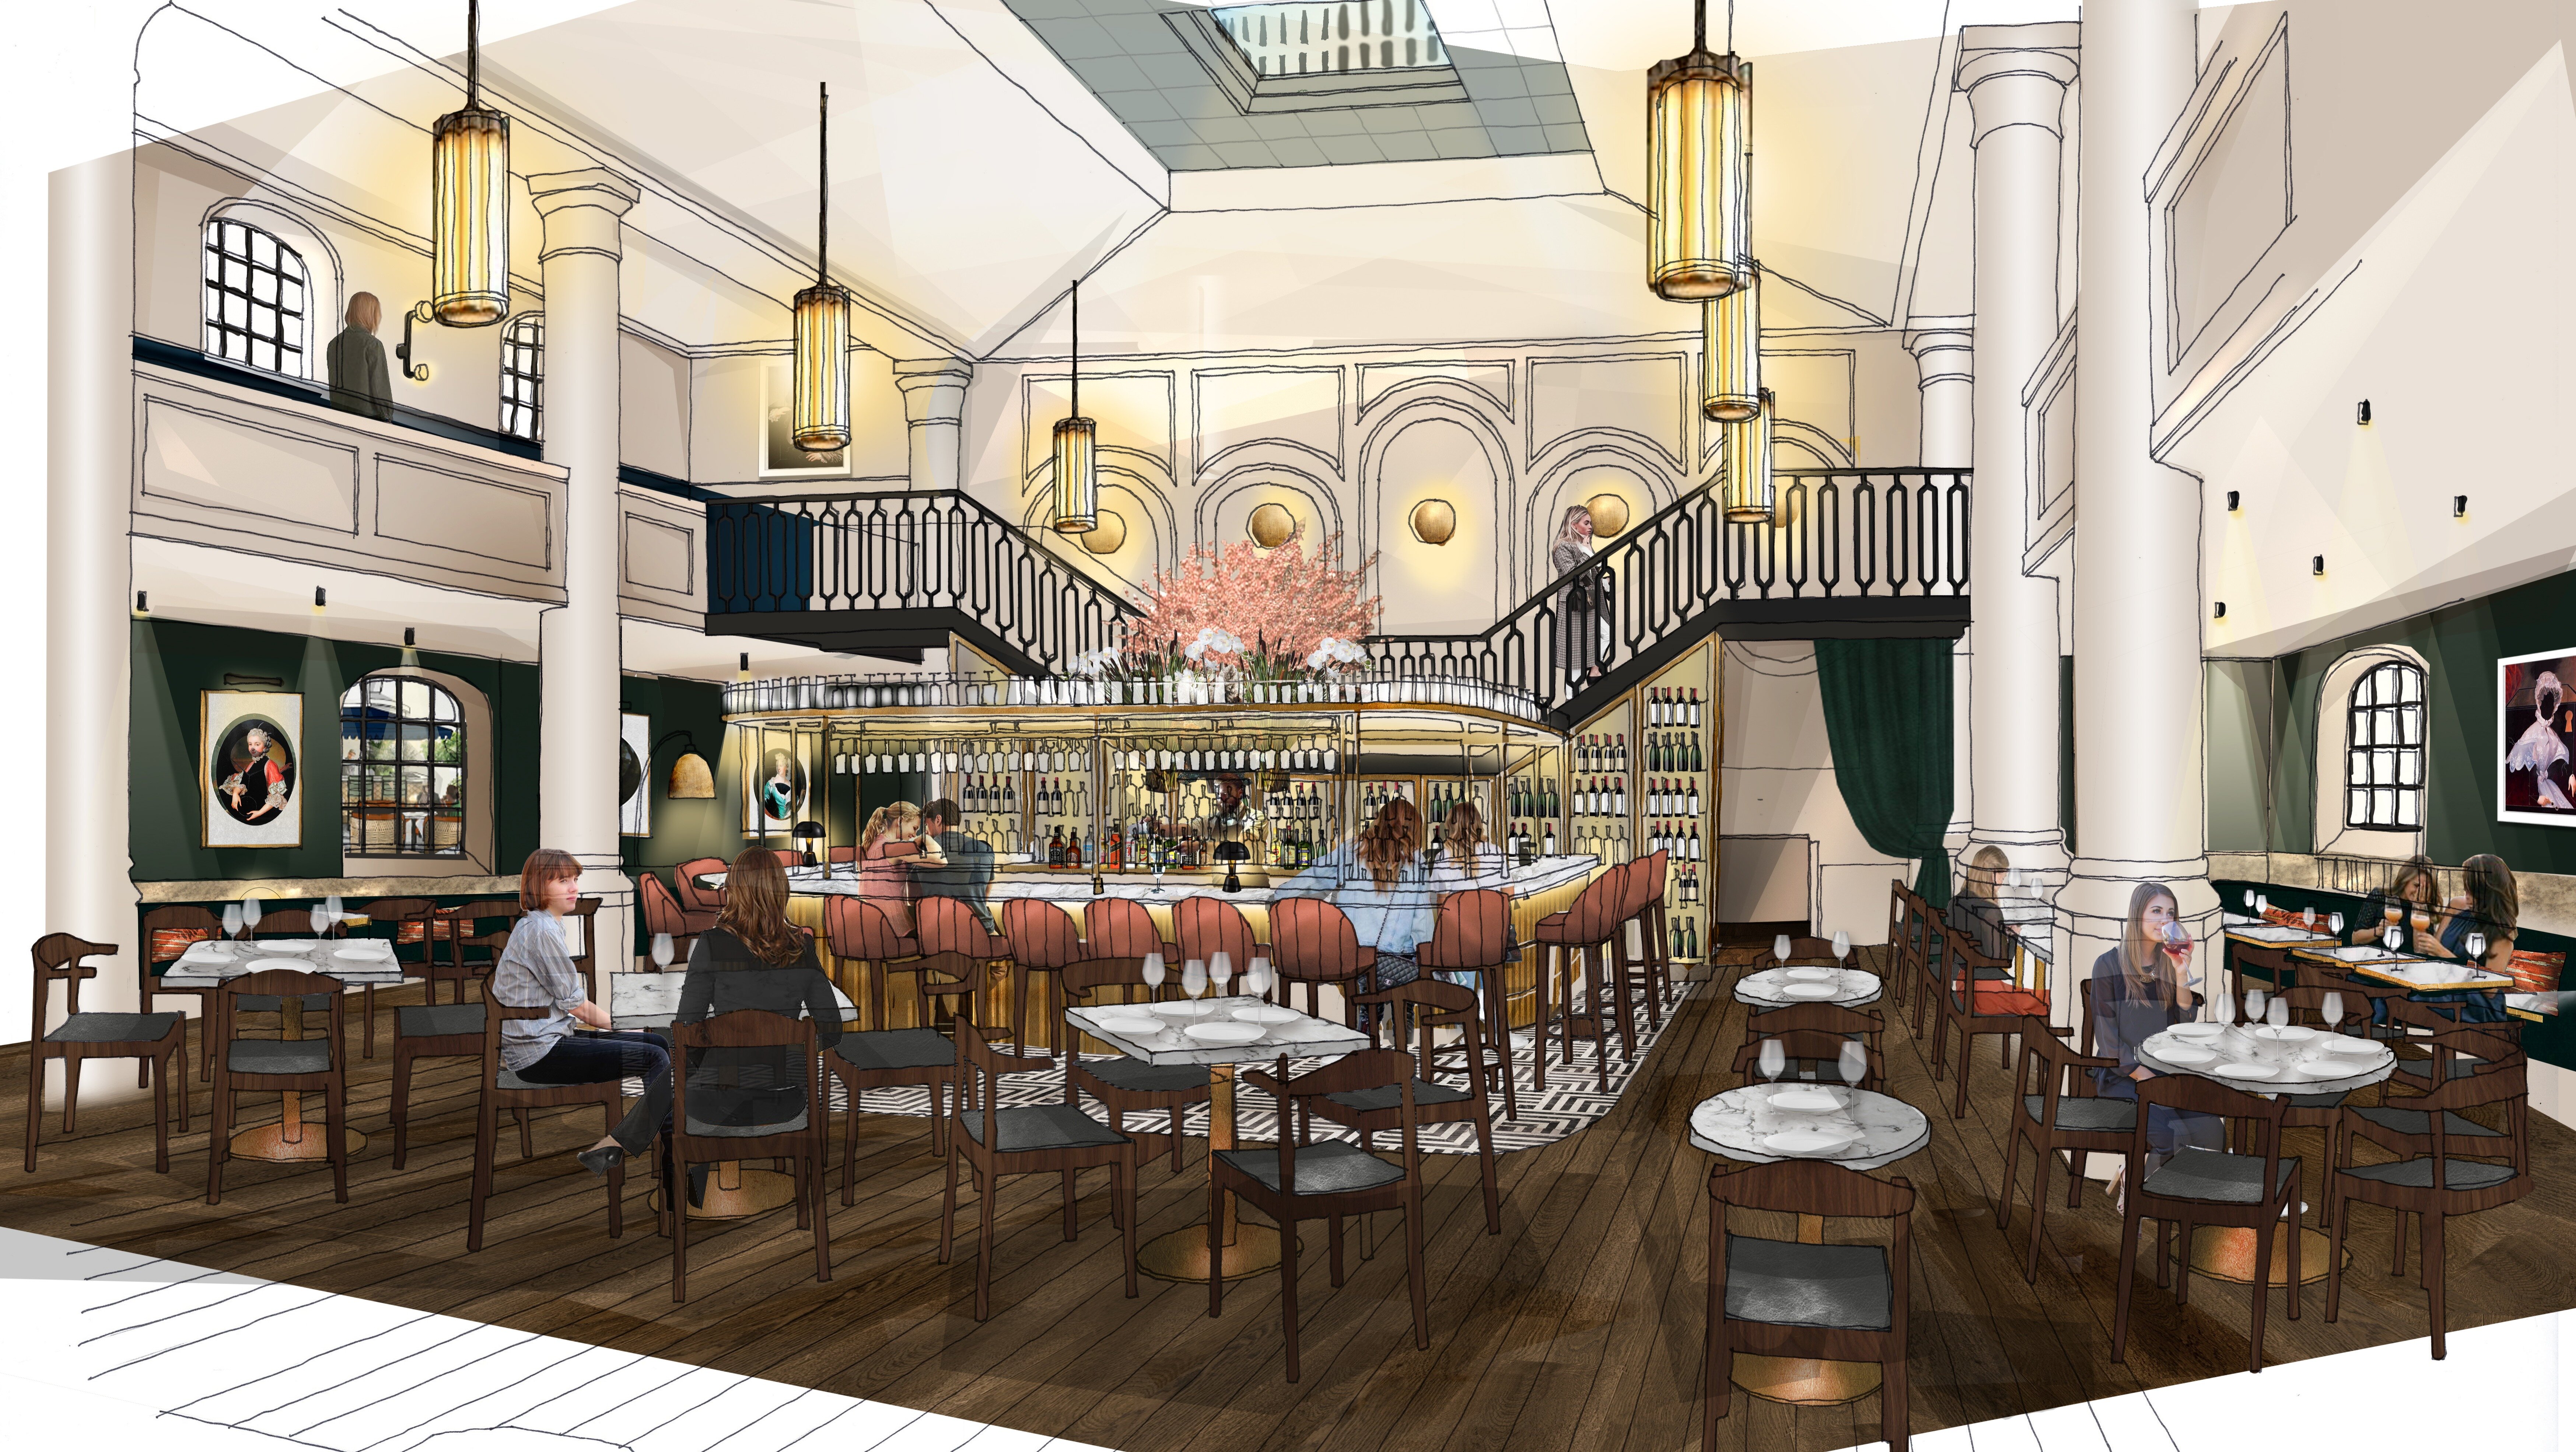 D&D London to open Bristol restaurant Klosterhaus next month